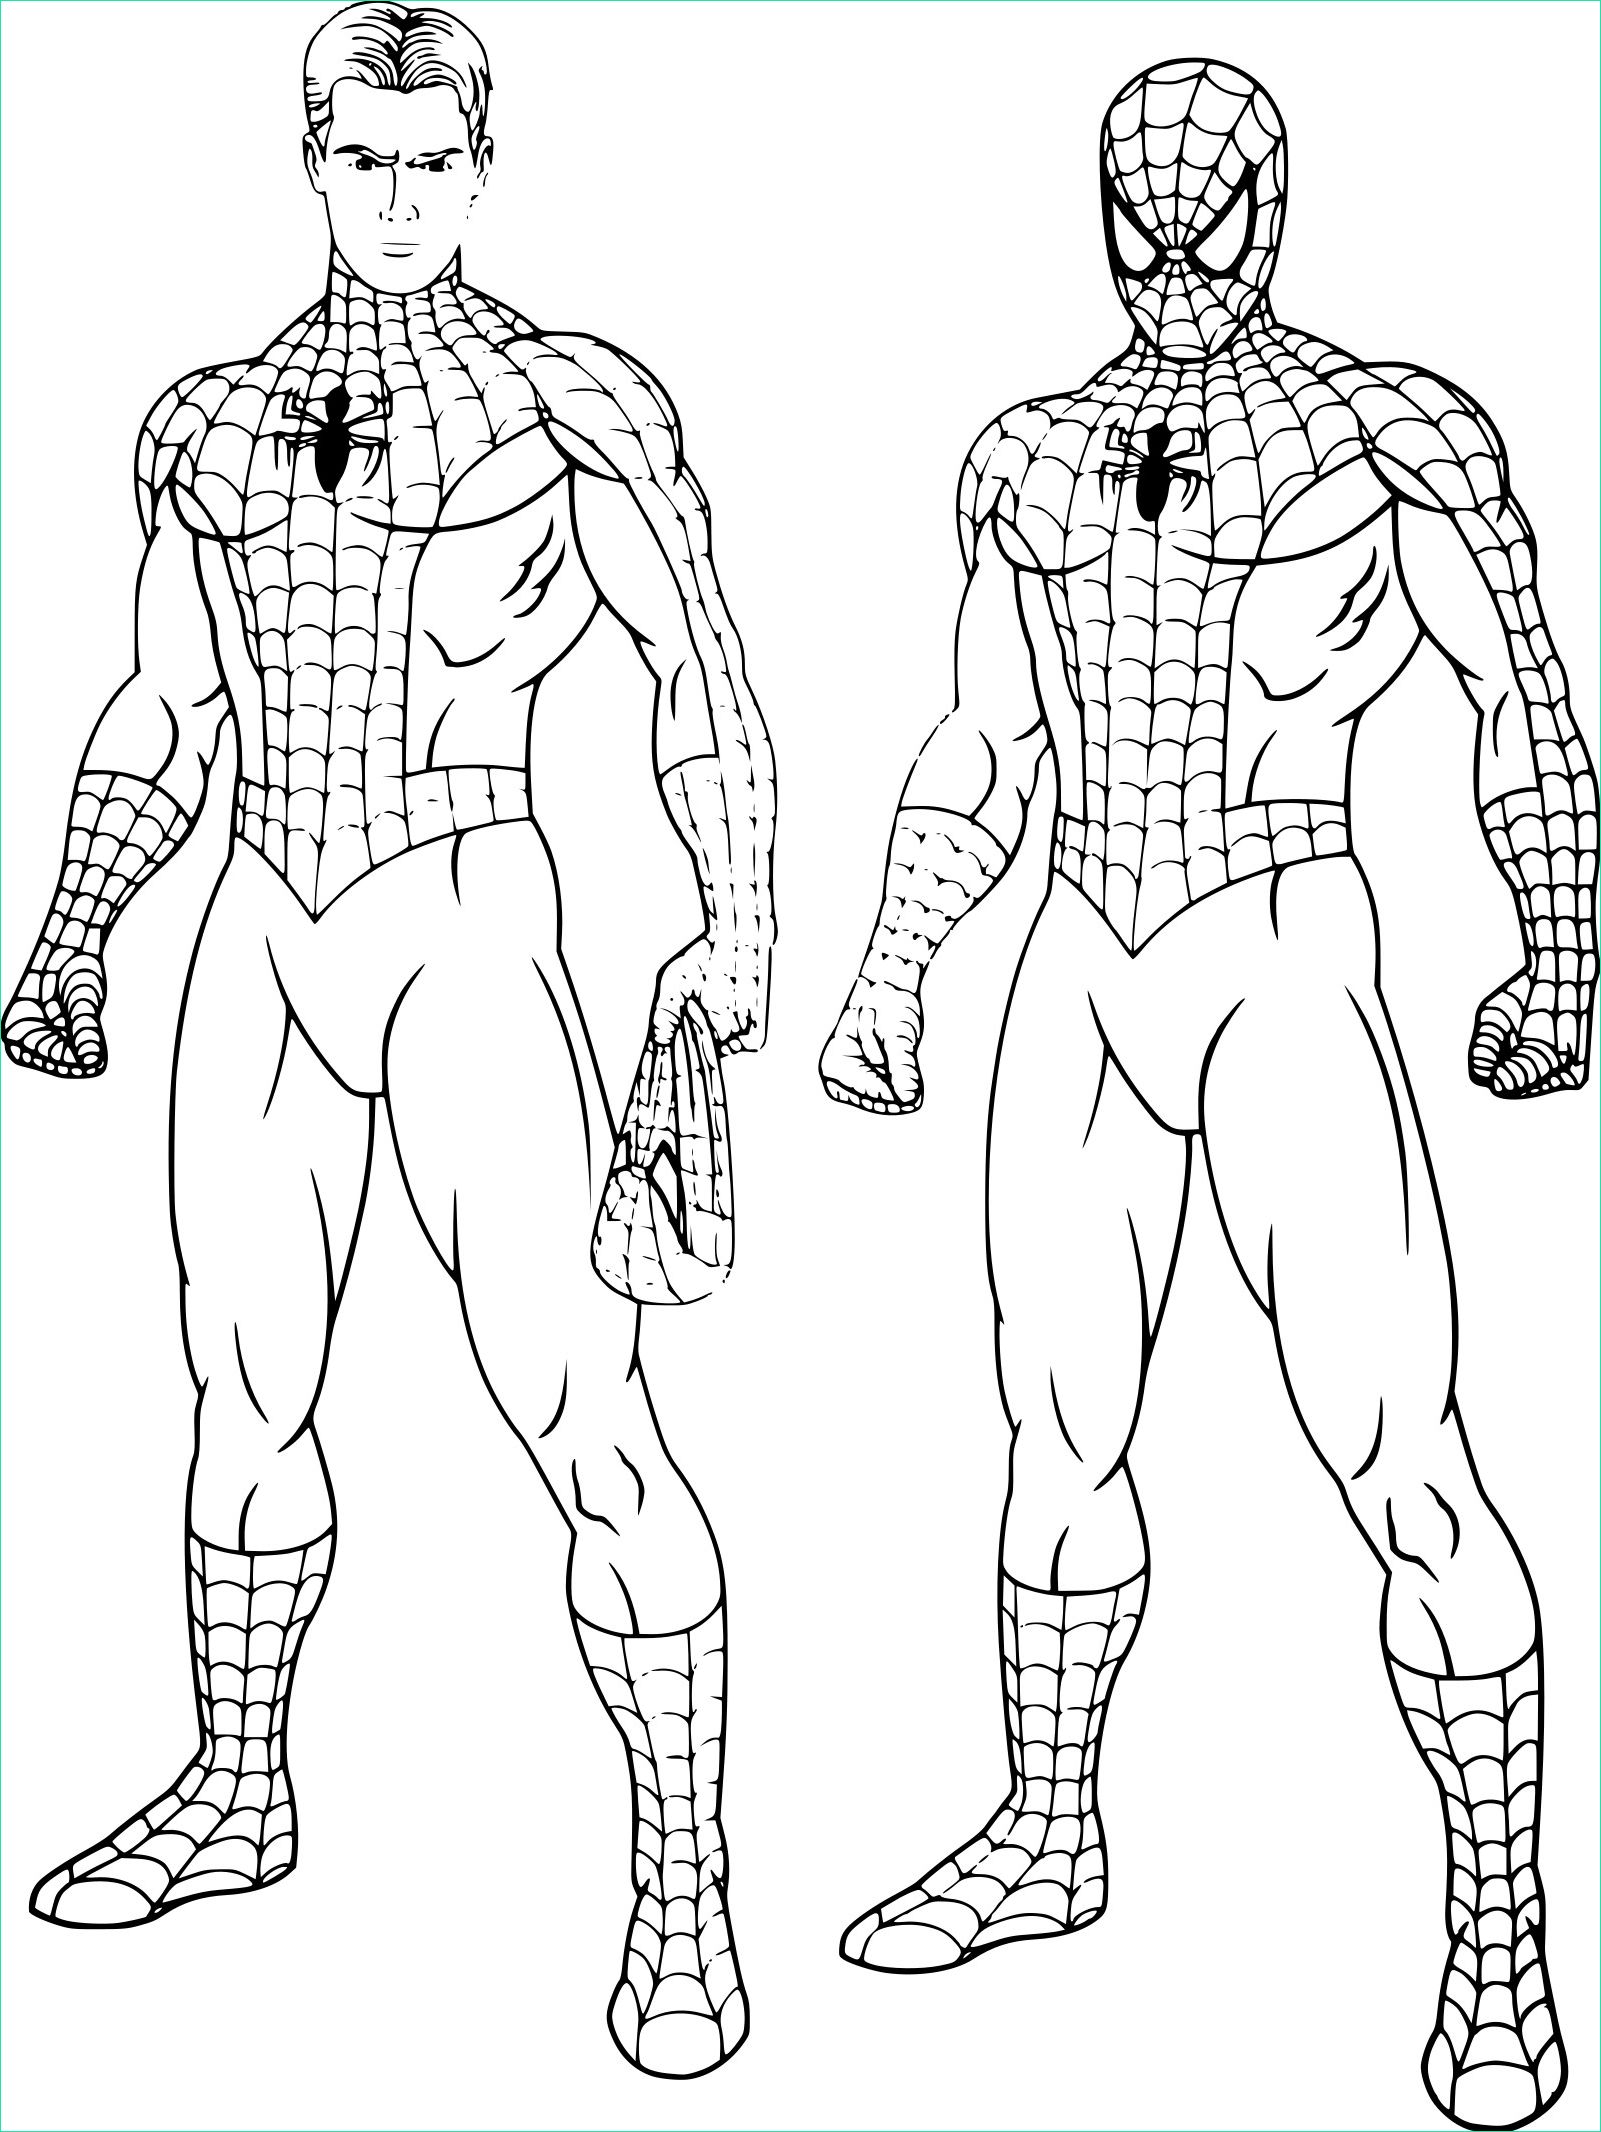 Coloriage A Imprimer Gratuit Cool Stock Coloriage Spiderman Peter Parker à Imprimer Sur Coloriages